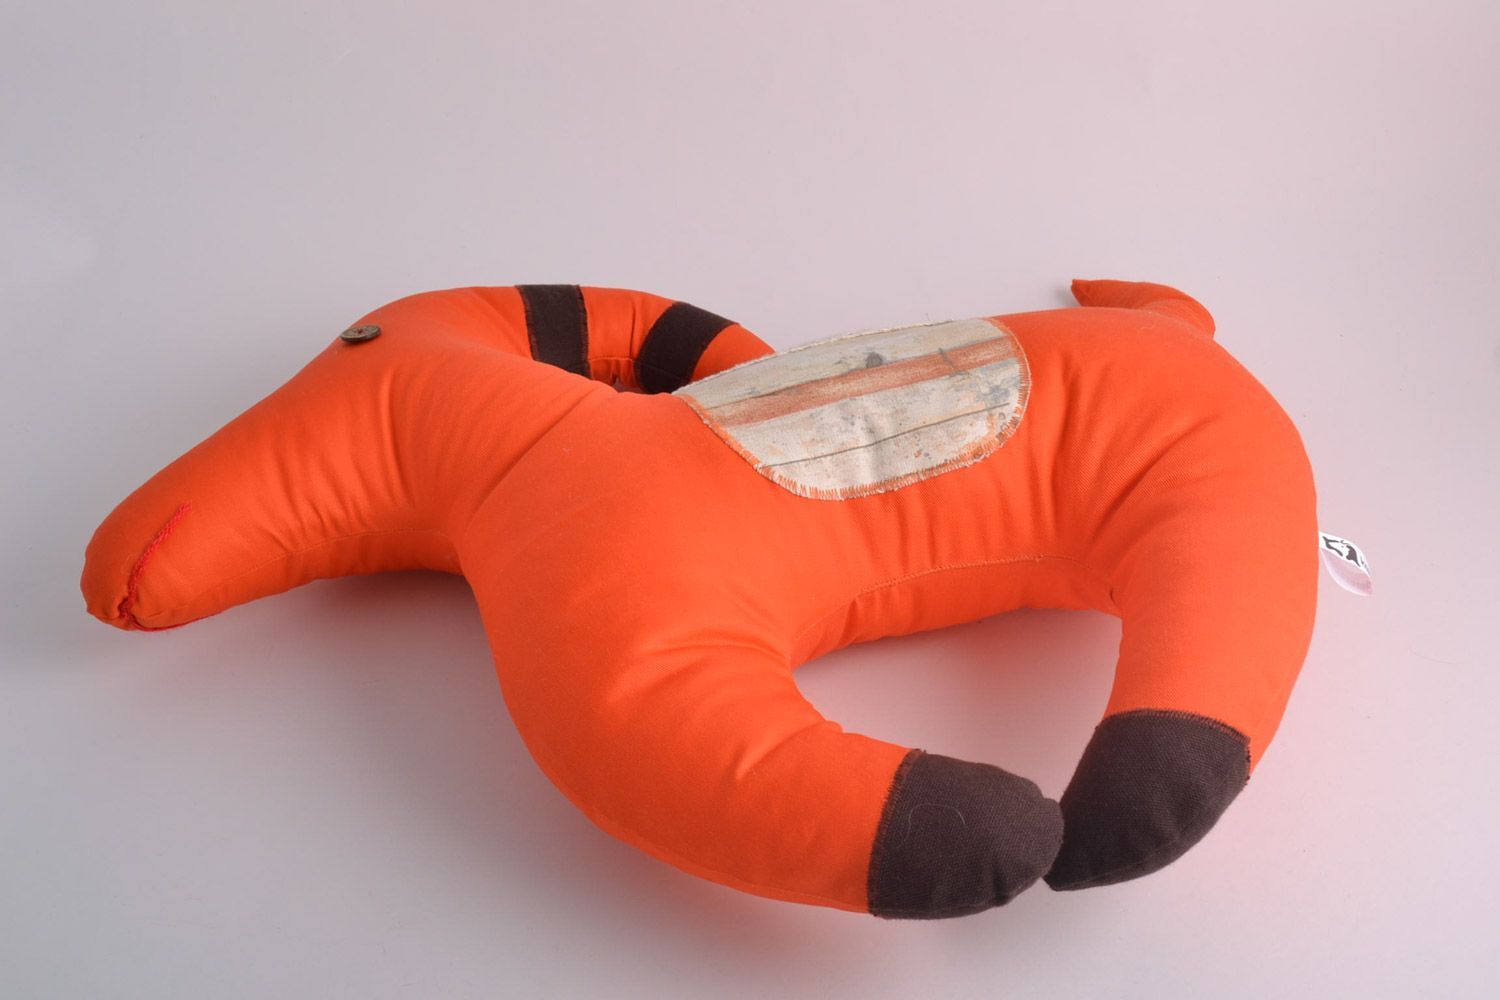 Künstlerisches orange Kissen Spielzeug aus Stoff in Form der Ziege Handarbeit foto 2